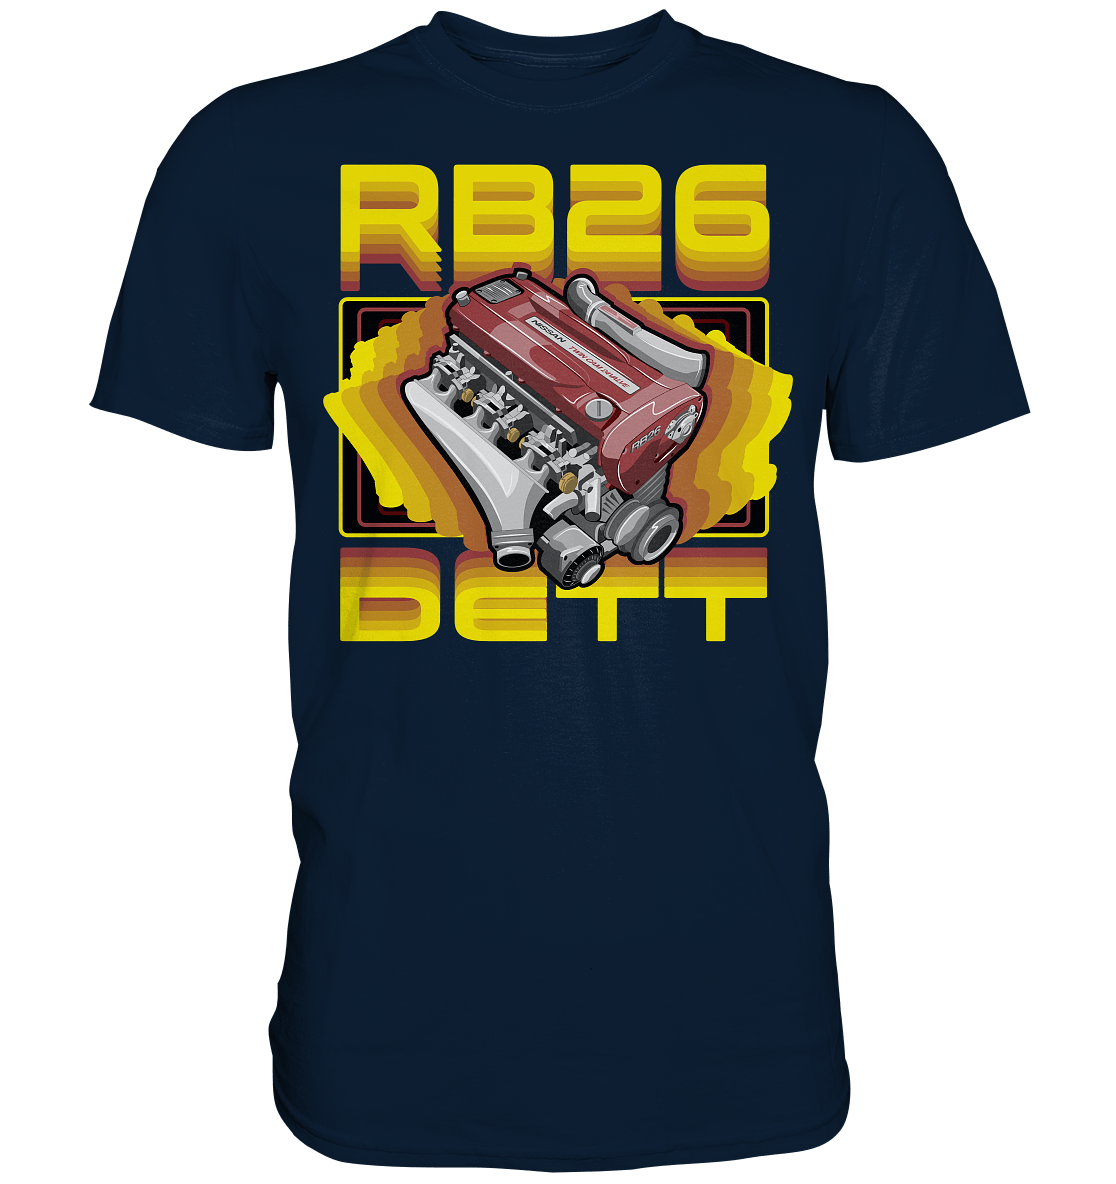 RB26DETT - Premium Shirt - MotoMerch.de